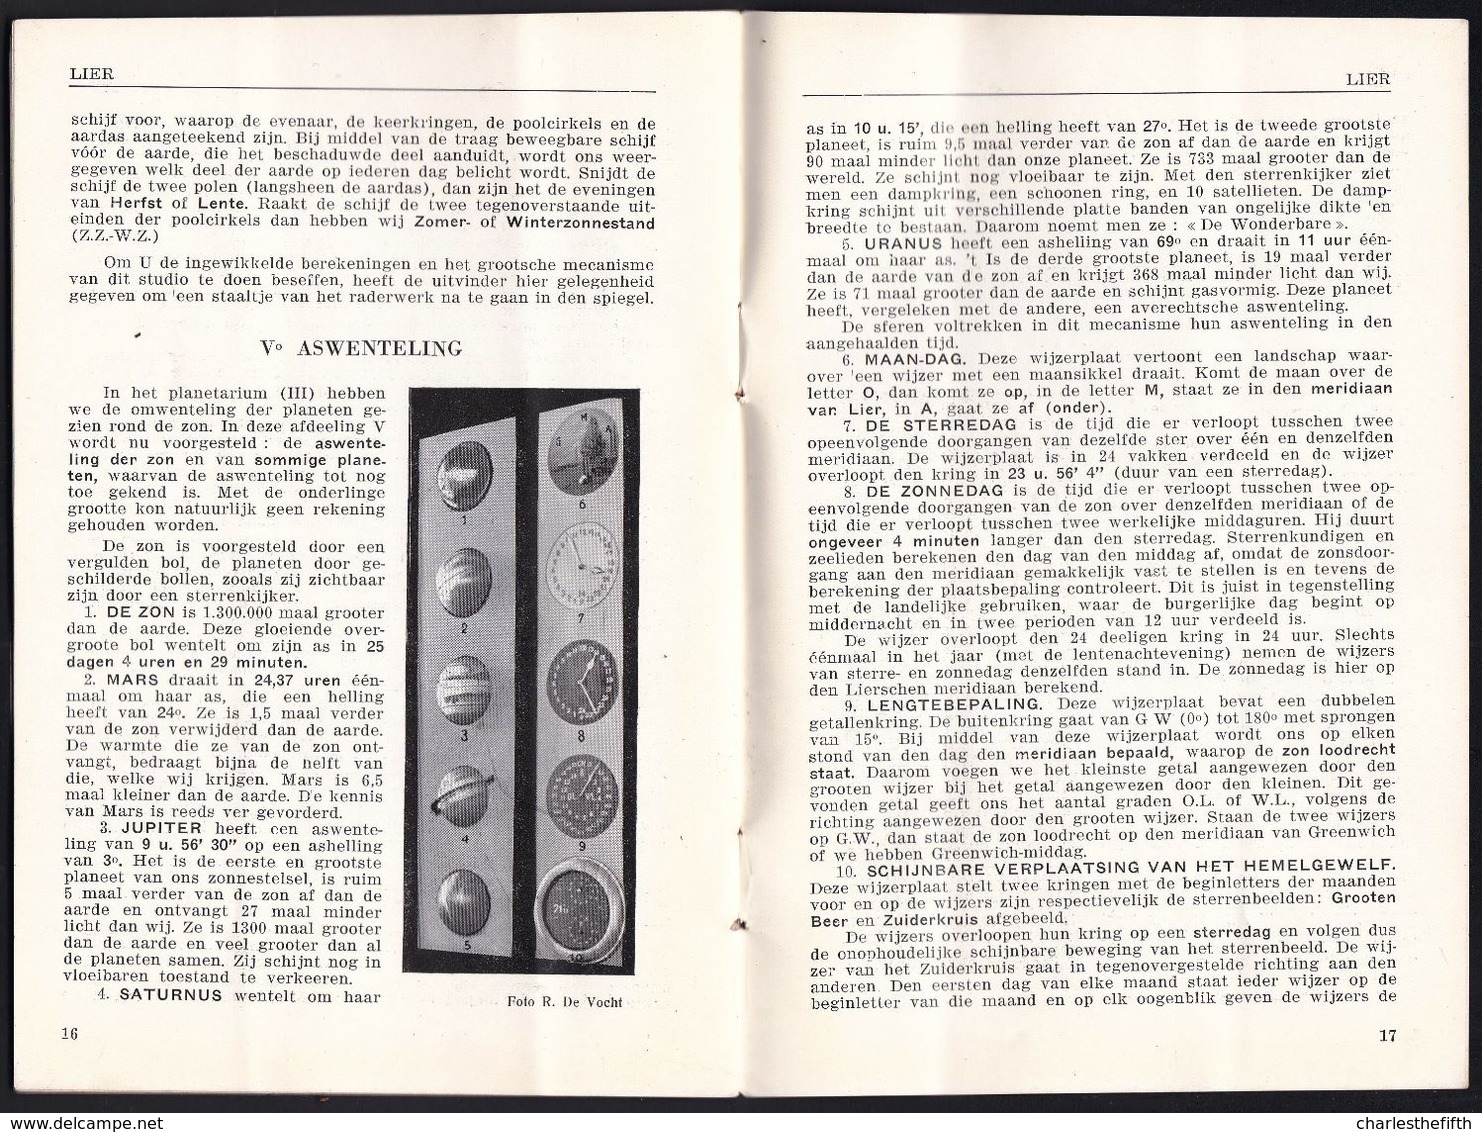 LIER - DE ZIMMERTOREN ASTRONOMISCHE KLOK EN STUDIO ORIGINELE BROCHURE 1931 - ZIE SCANS  ! - Tourism Brochures